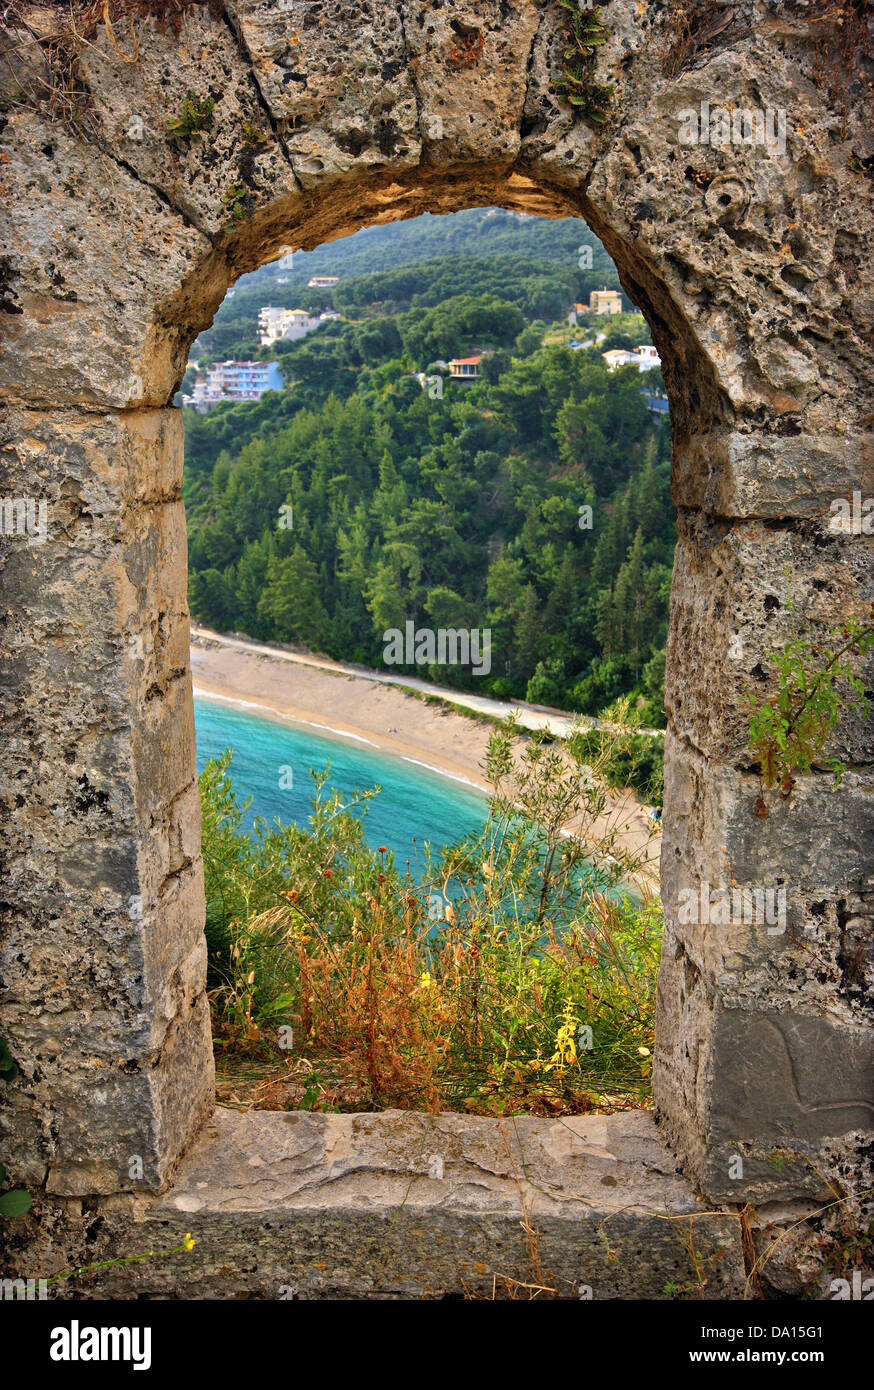 Valtos beach, seen 'through' the walls of the Venetian castle of Parga town, Preveza, Epirus, Greece. Stock Photo